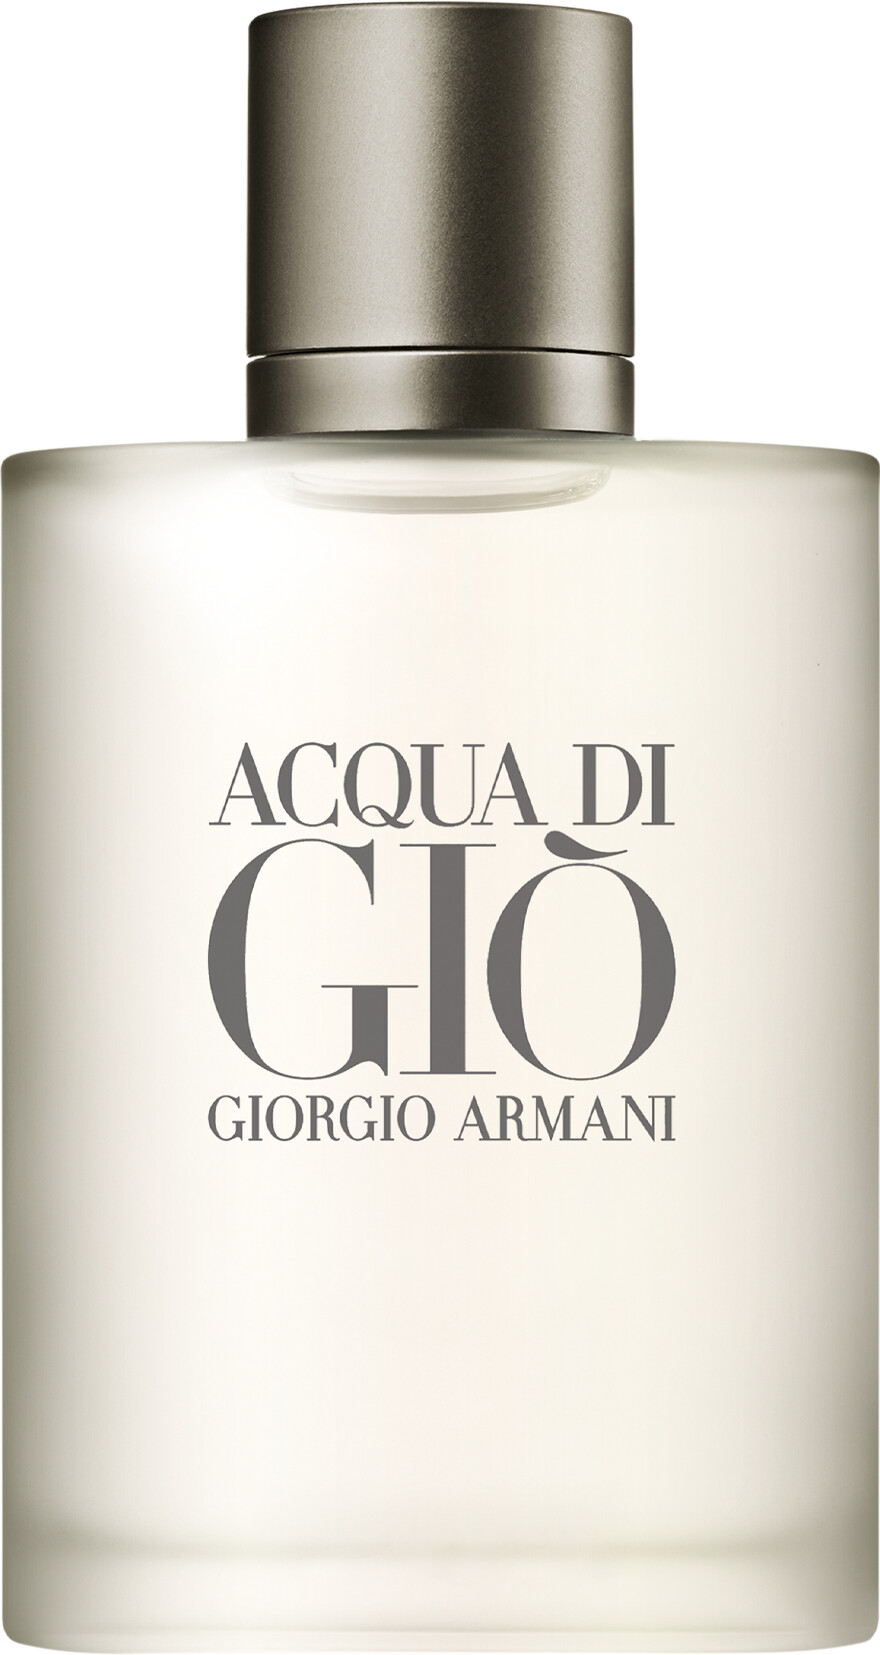 Giorgio Armani Acqua di Gio Pour Homme Eau de Toilette Spray 30ml